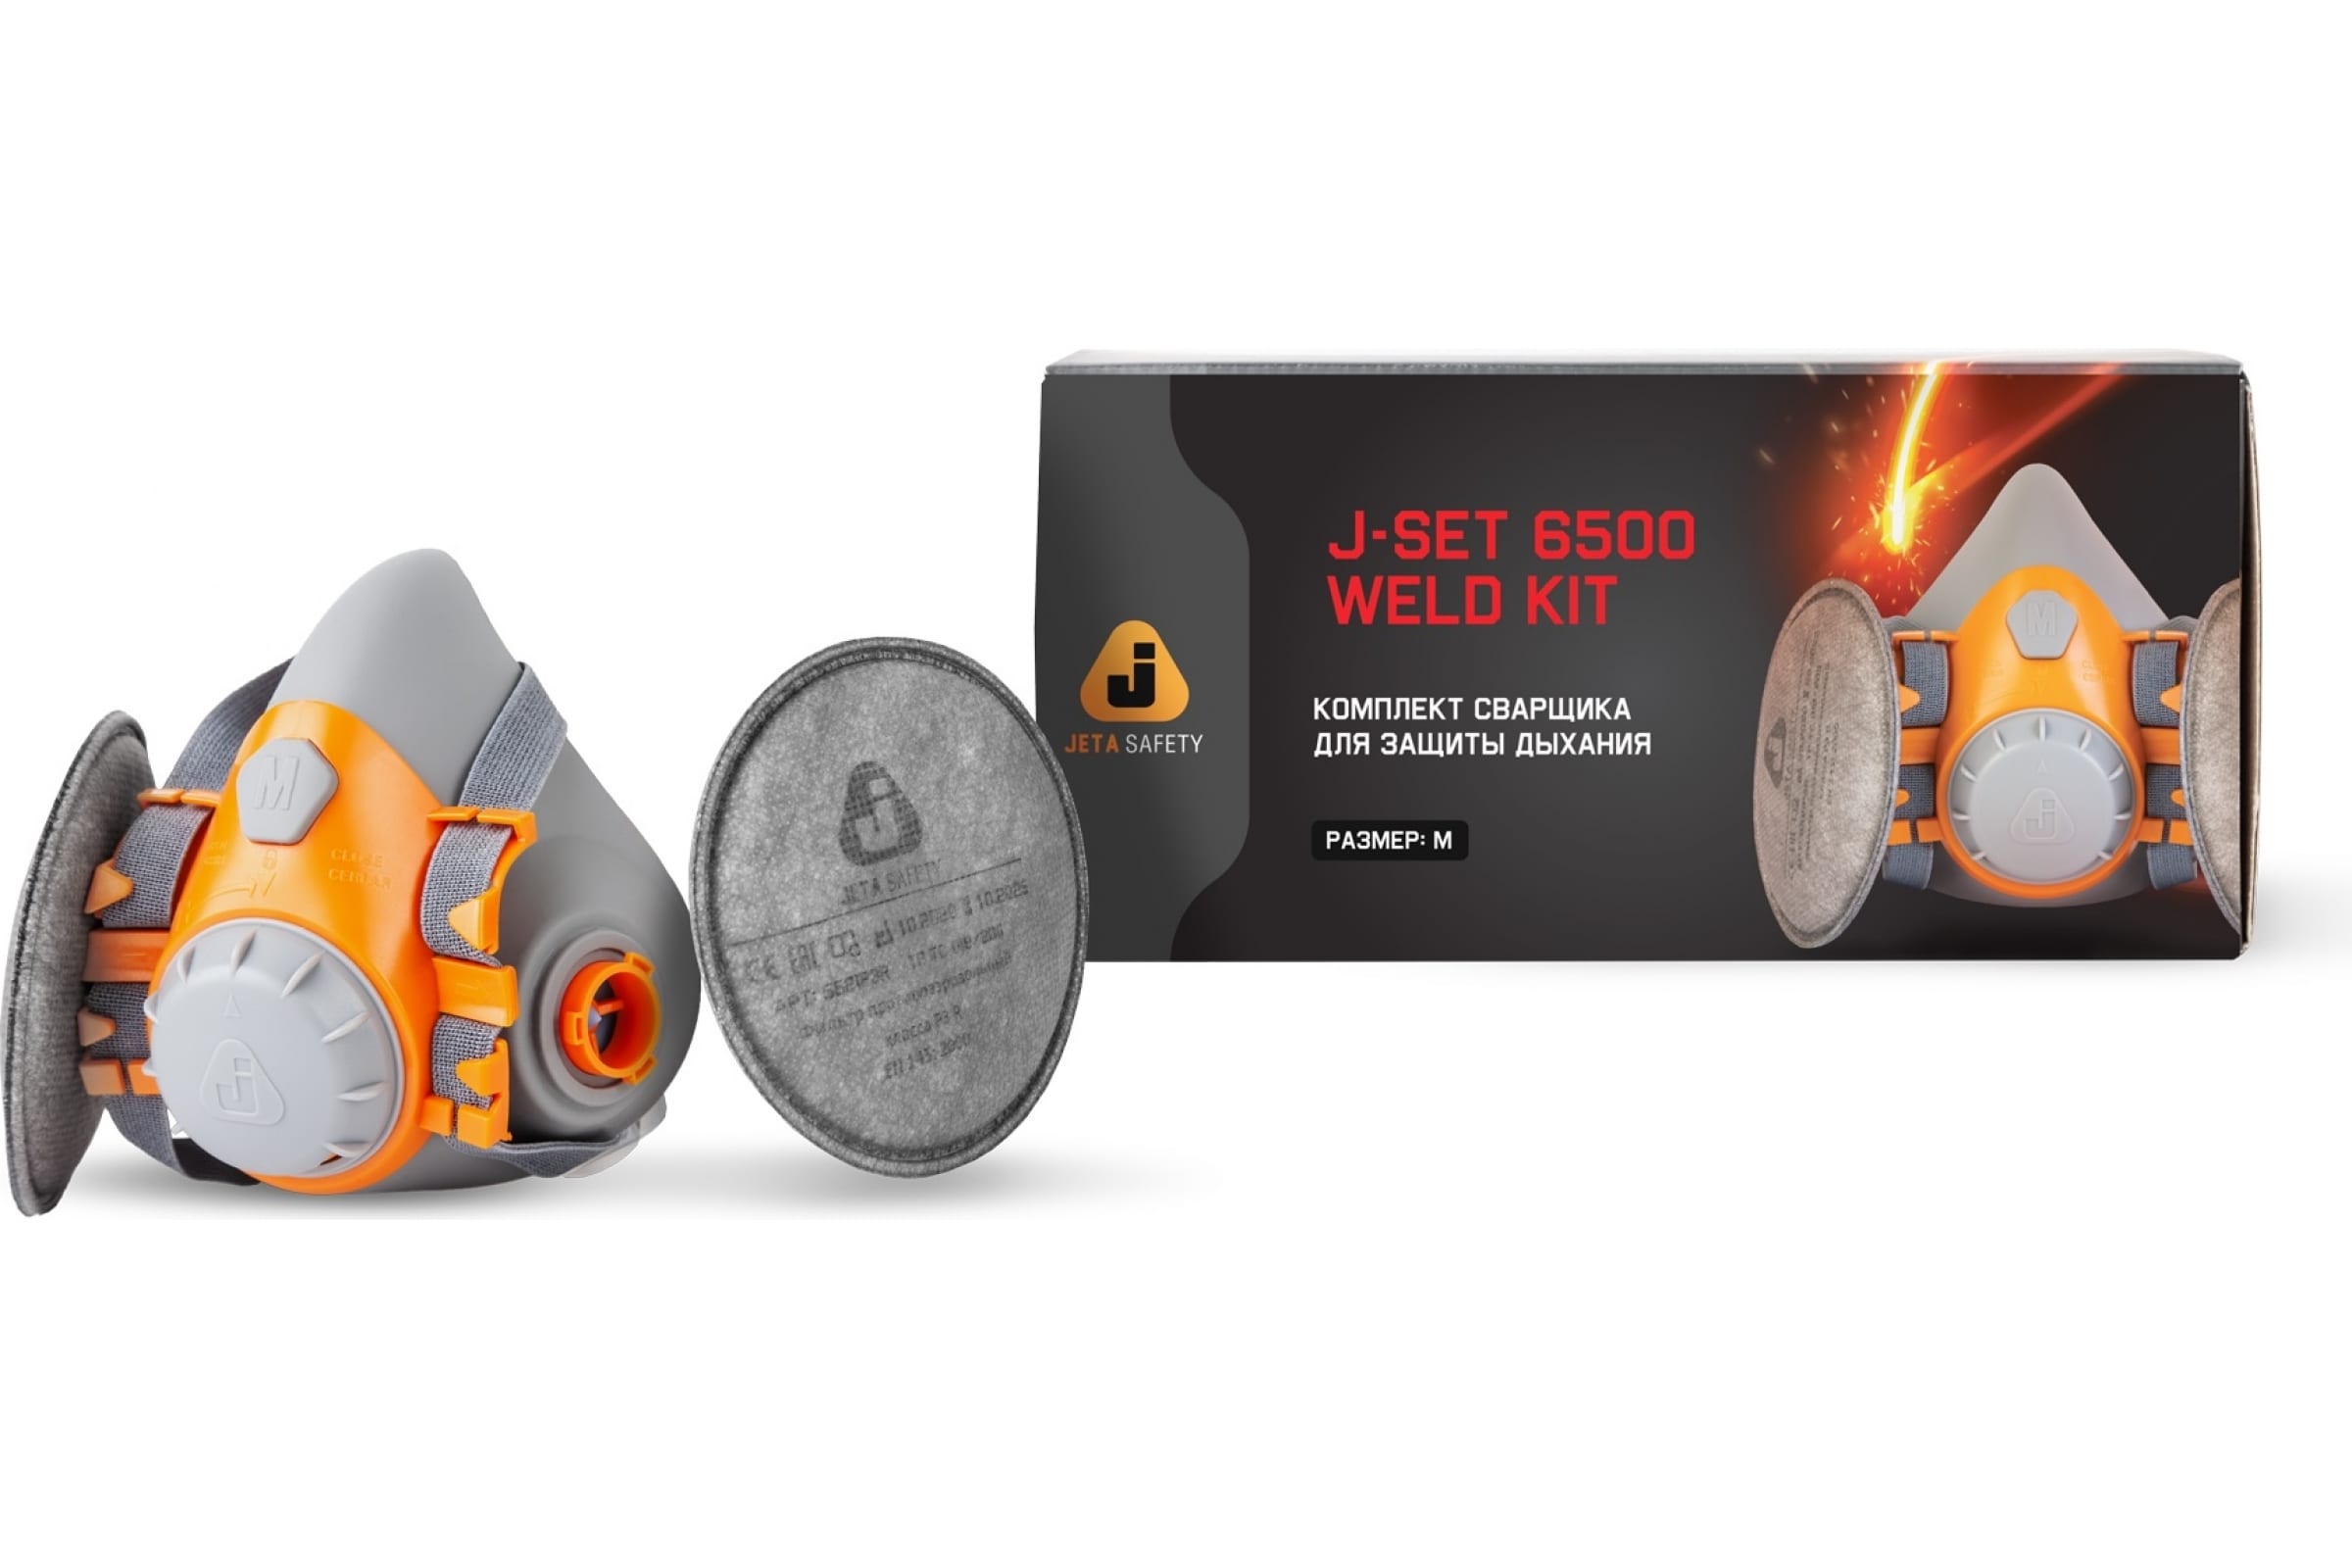 Jeta Safety Комплект для защиты дыхания сварщика WeldKit6500-M комплект для защиты дыхания сварщика jeta safety